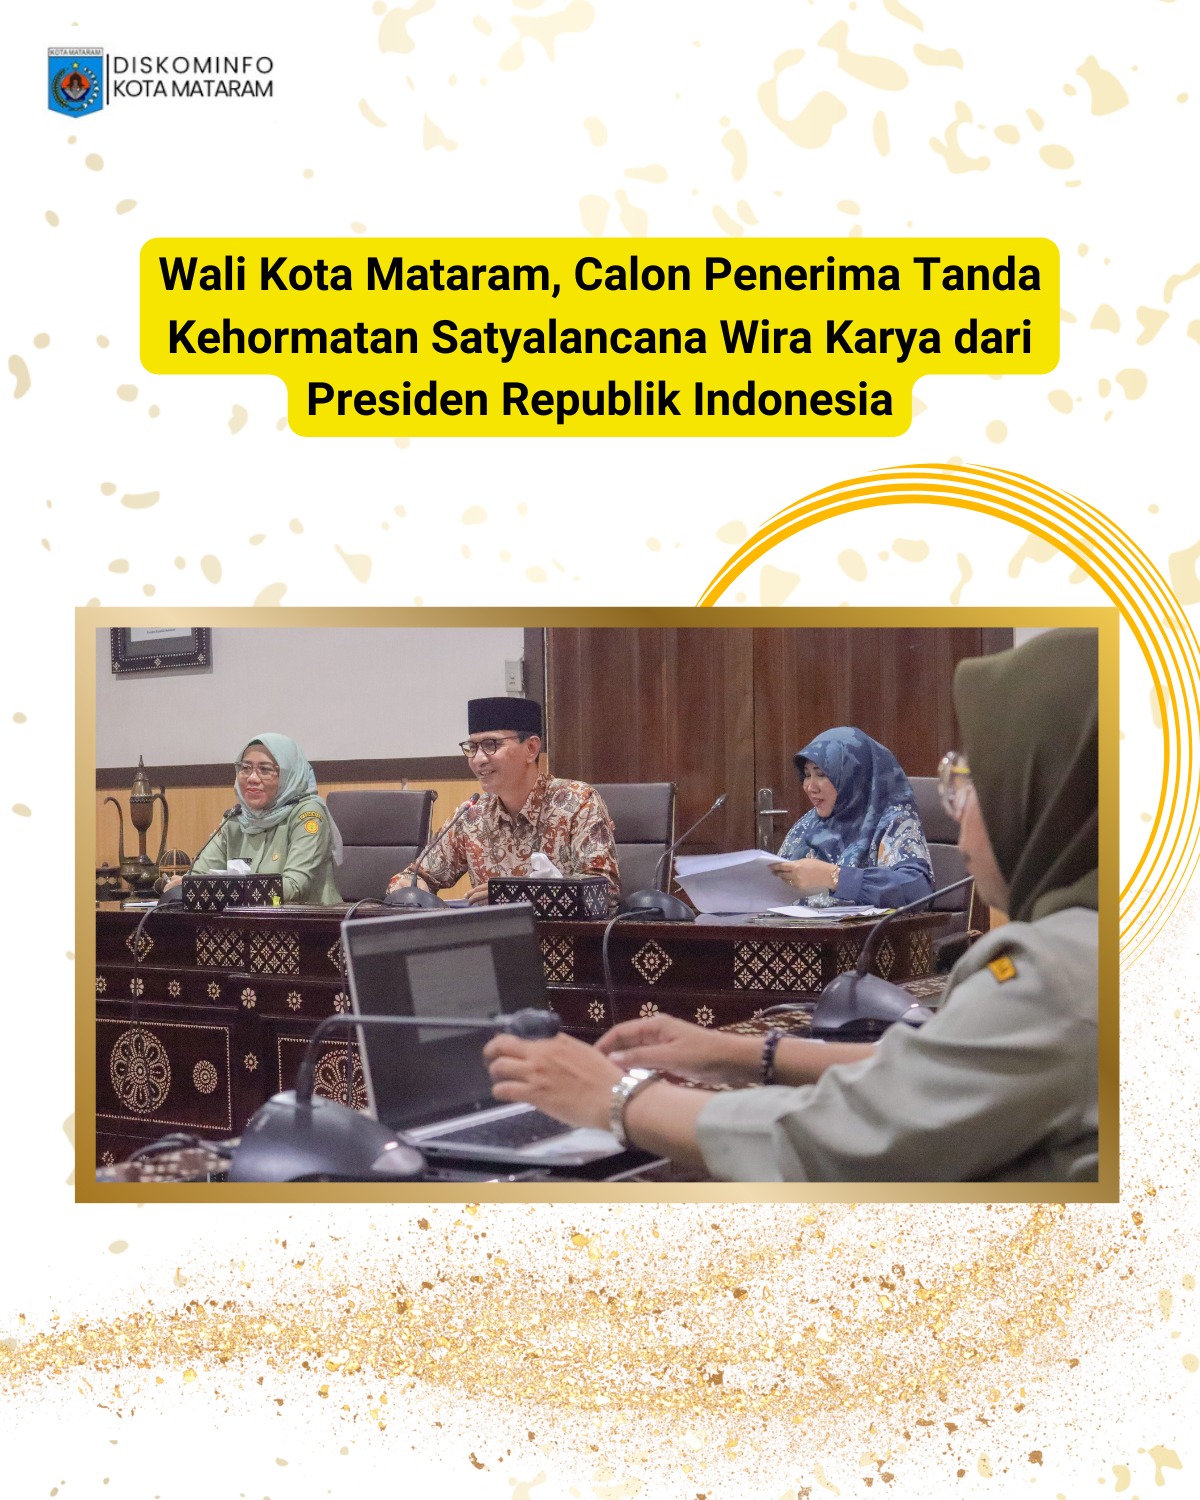 Walikota Mataram calon penerima tanda kehormatan Satyalancana Wira Karya dari Presiden RI